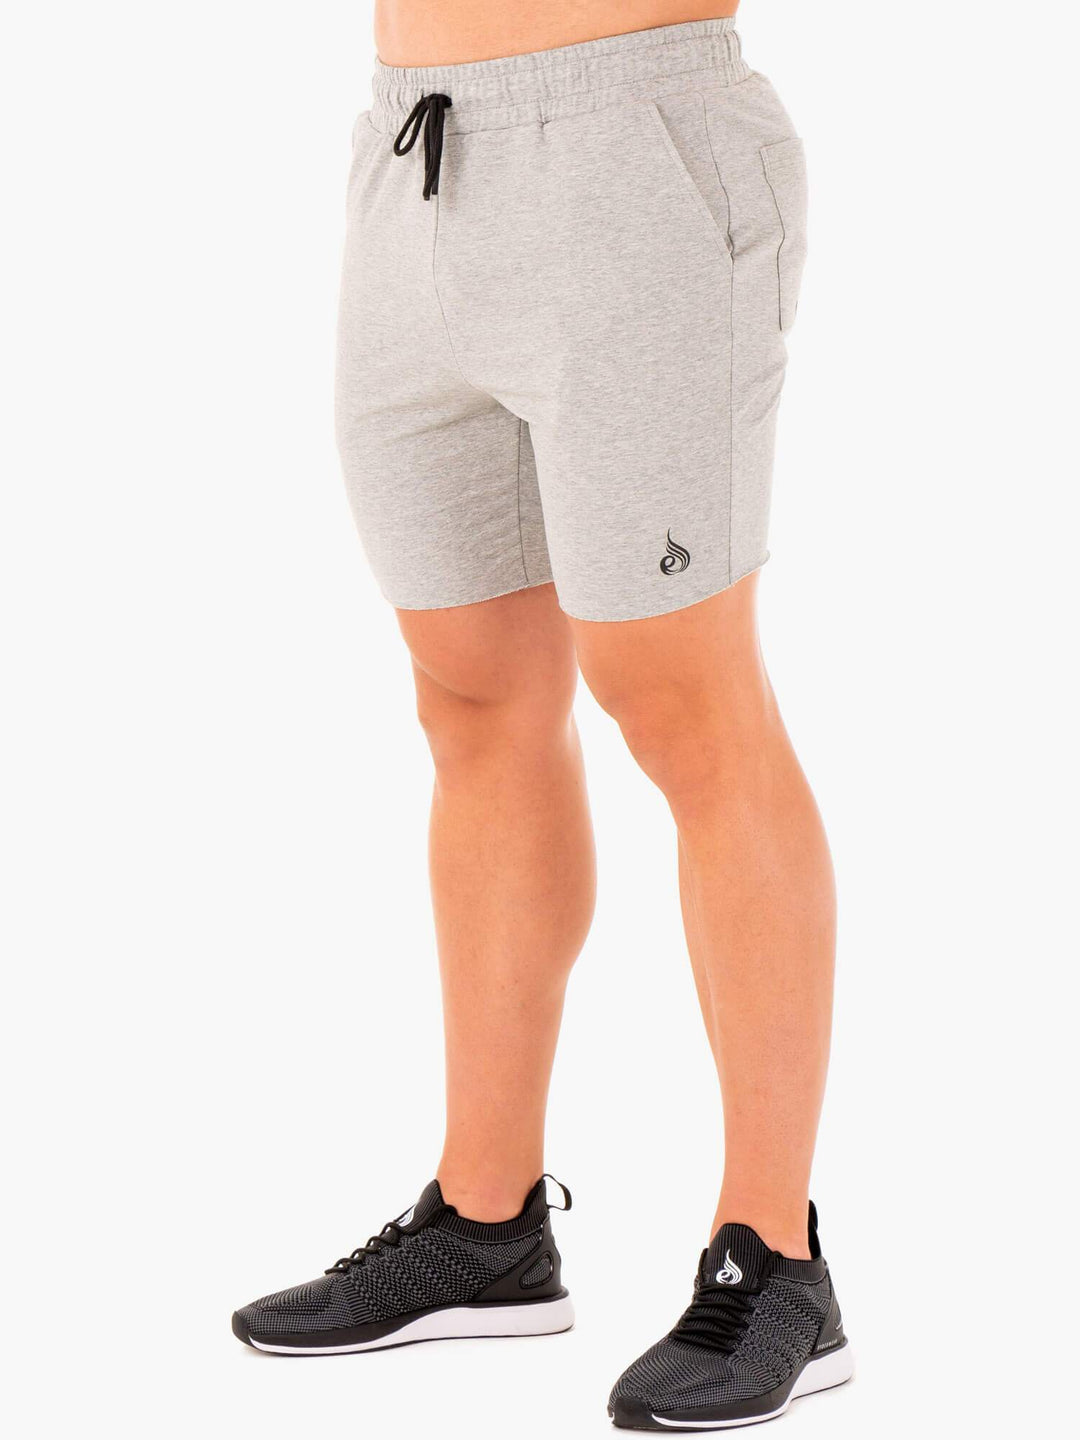 Base Gym Shorts - Grey Marl Clothing Ryderwear 